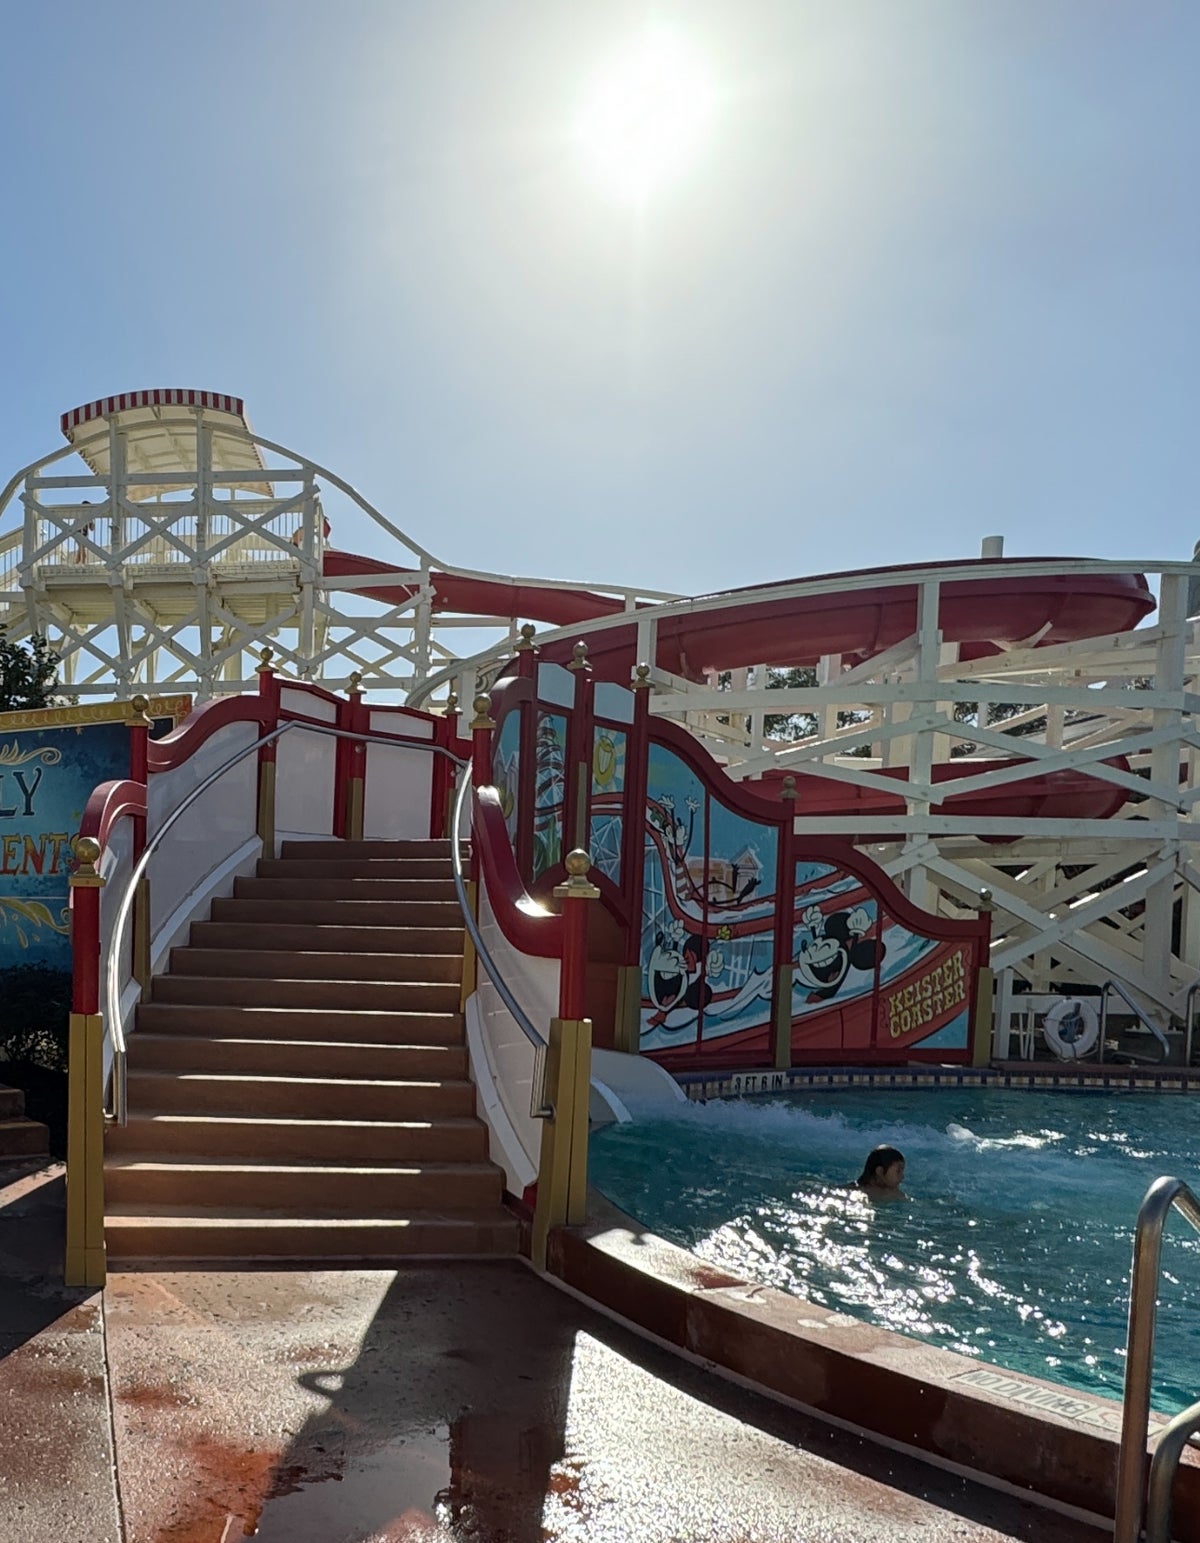 Luna Park Pool Slide